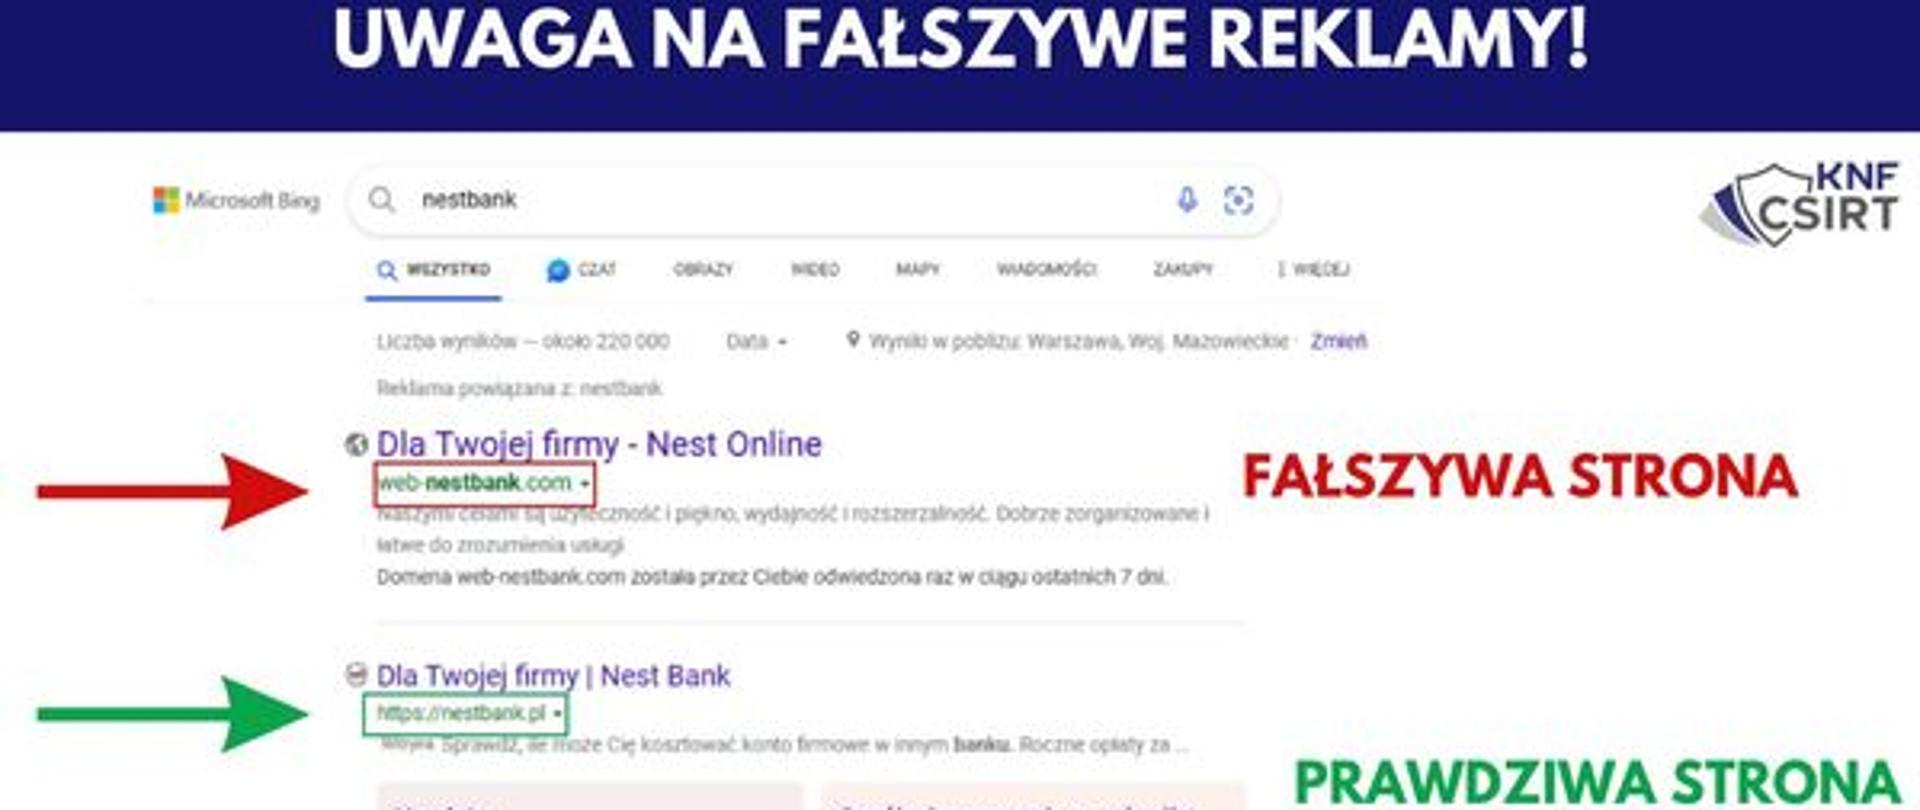 Uwaga Fałszywe reklamy - zdjęcie wyszukiwarki internetowej gdzie wyświetlają się reklamy - na czerwono zaznaczona fałszywa reklama , na zielono Prawdziwa strona